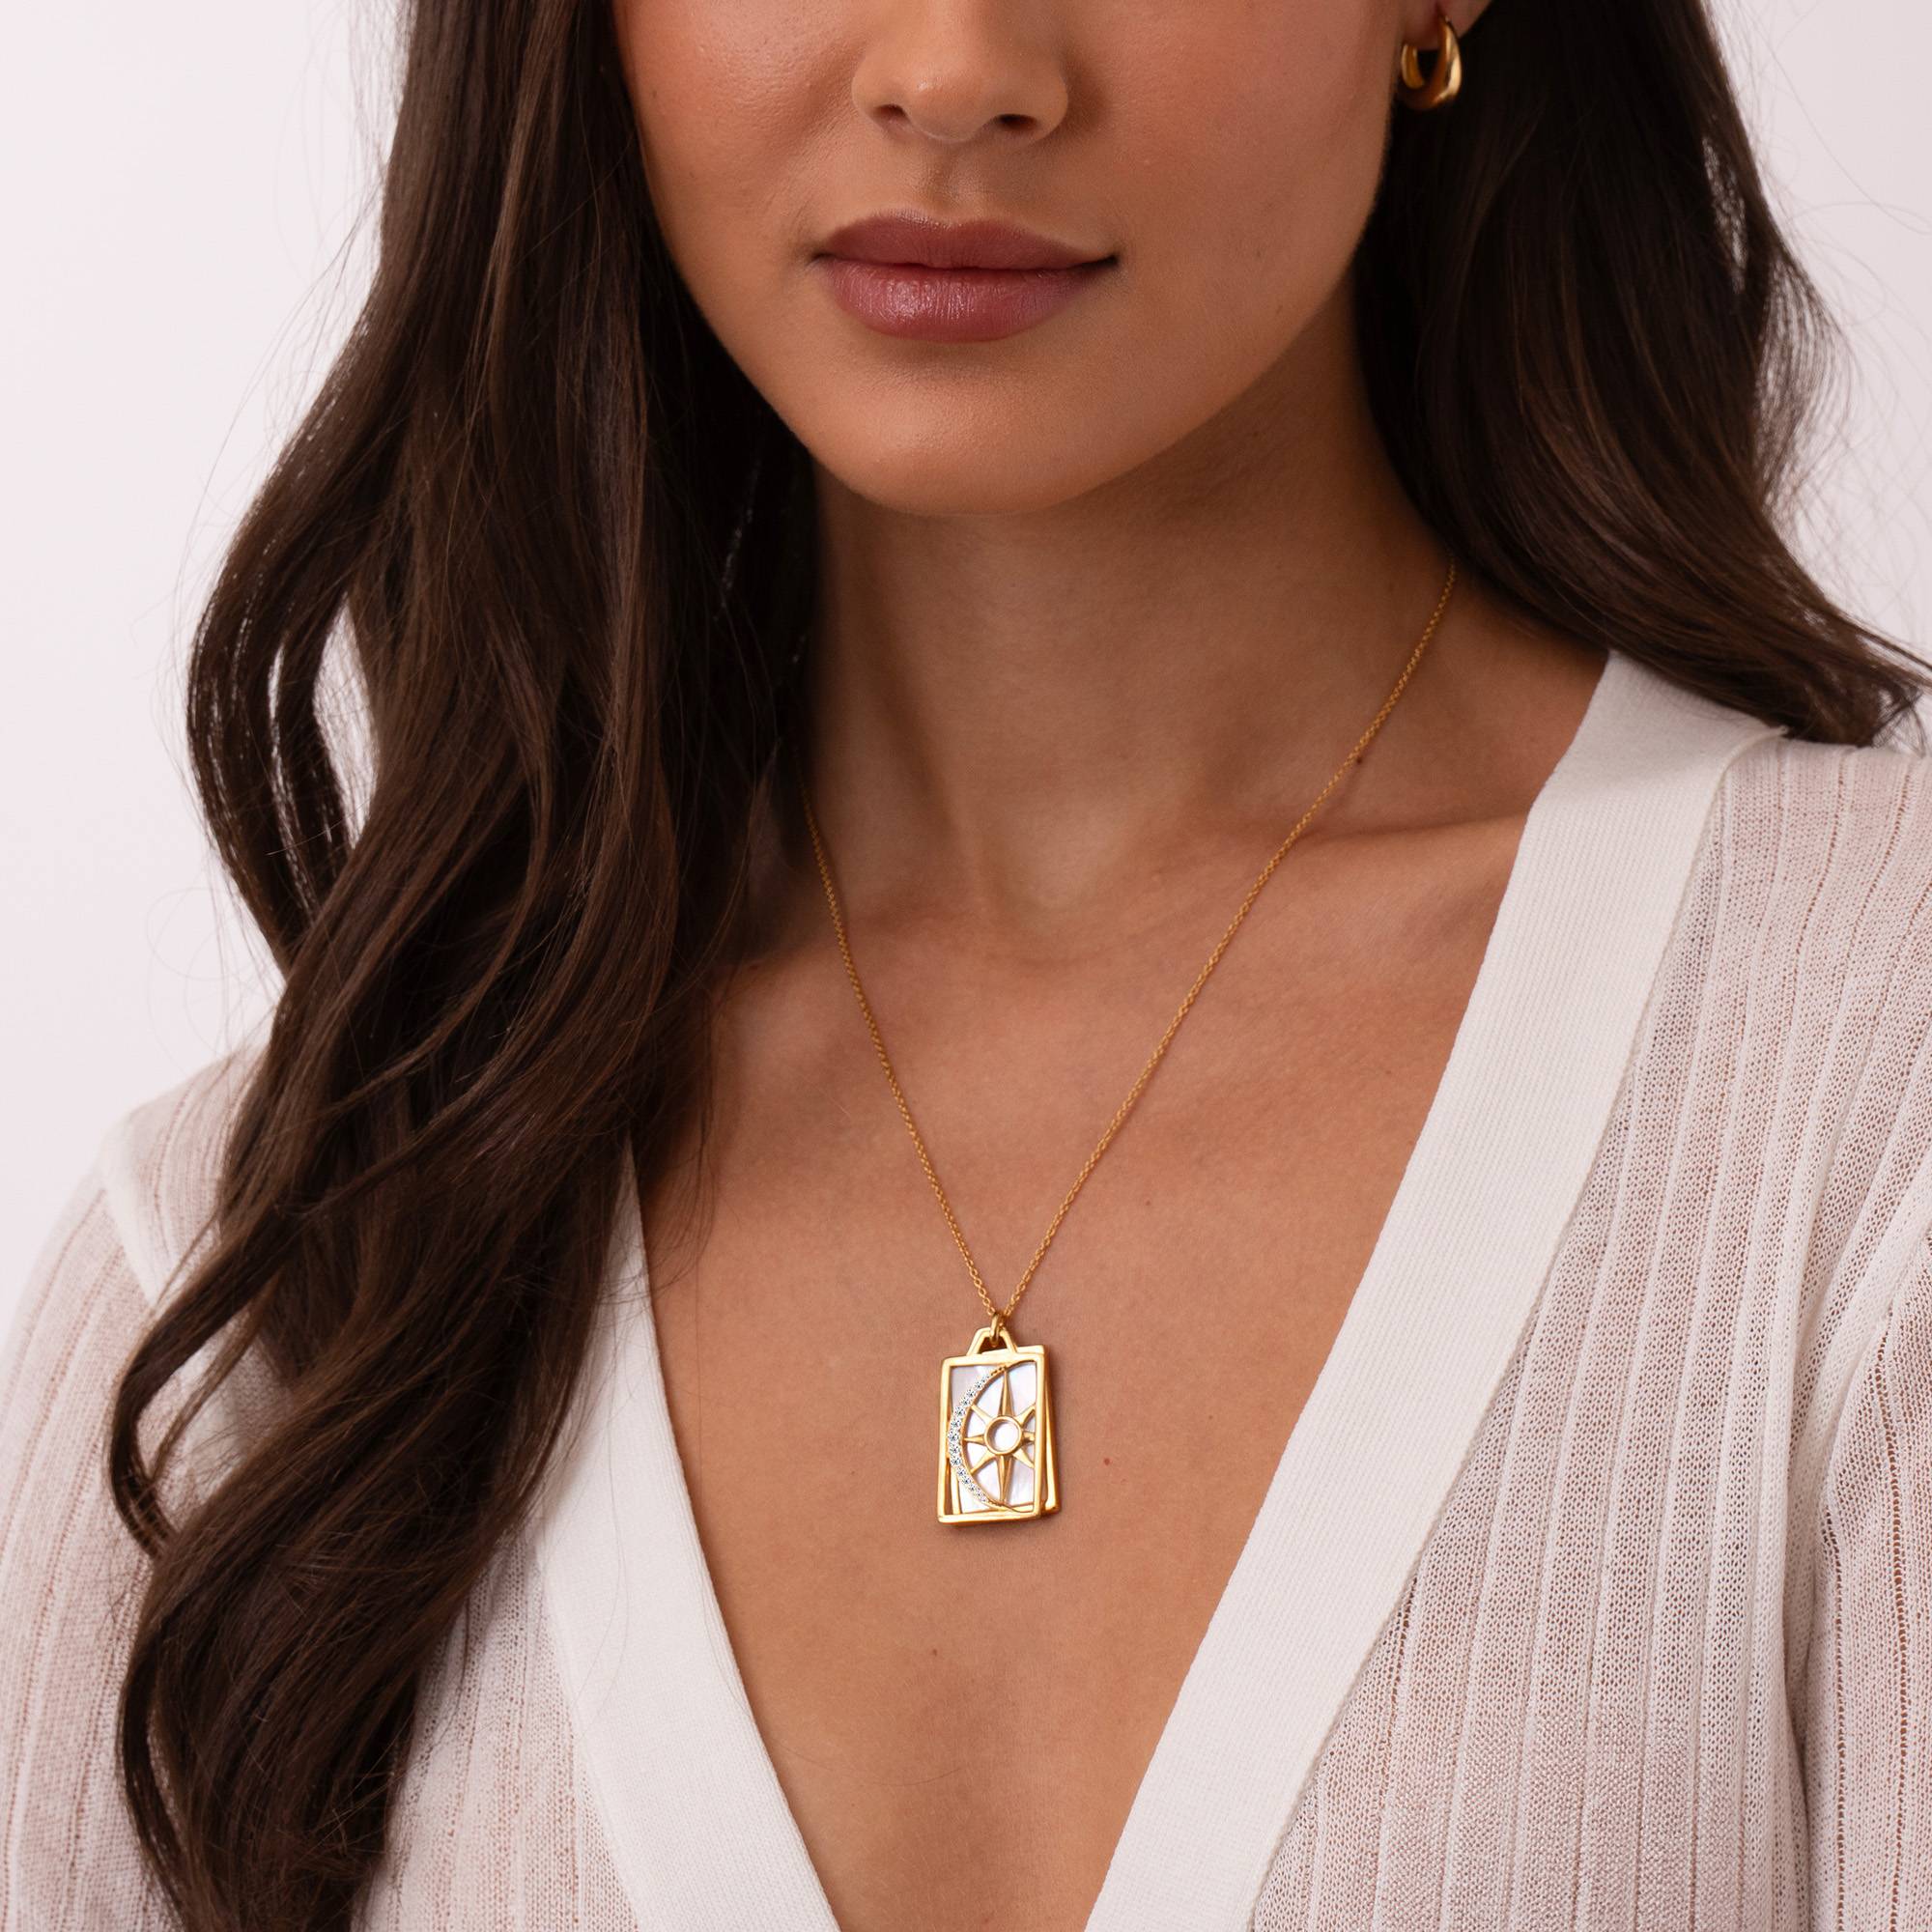 Himmlische Sonne & Mond personalisierte Halskette - 750er vergoldetes Silber-6 Produktfoto